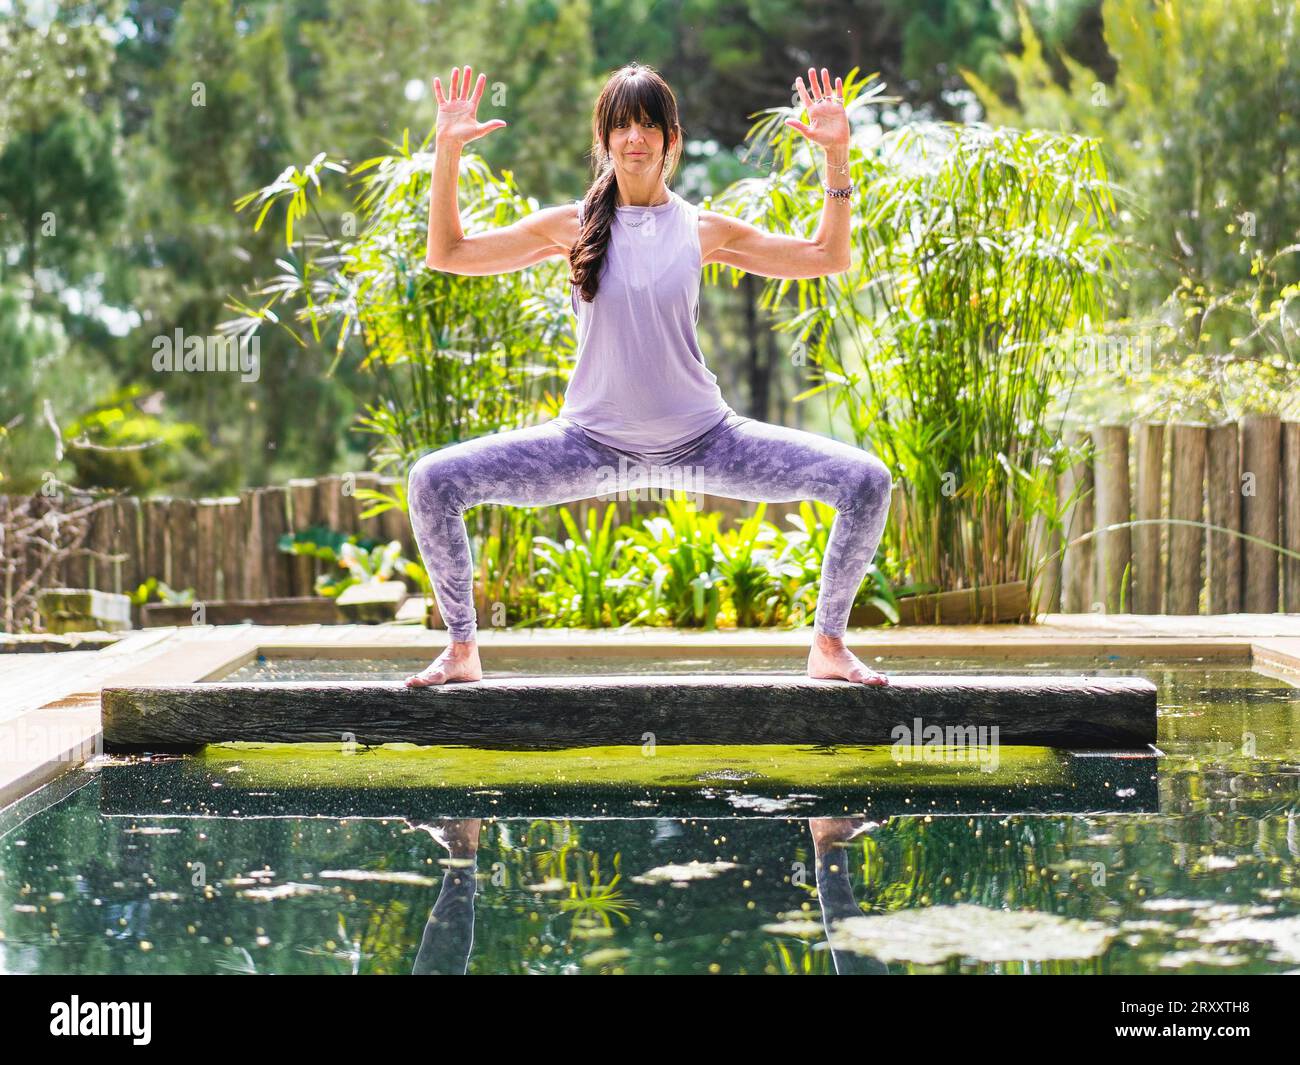 Une femme pratiquant le yoga pose Déesse avec Cactus Arms sur un tronc d'arbre au-dessus d'une piscine Banque D'Images